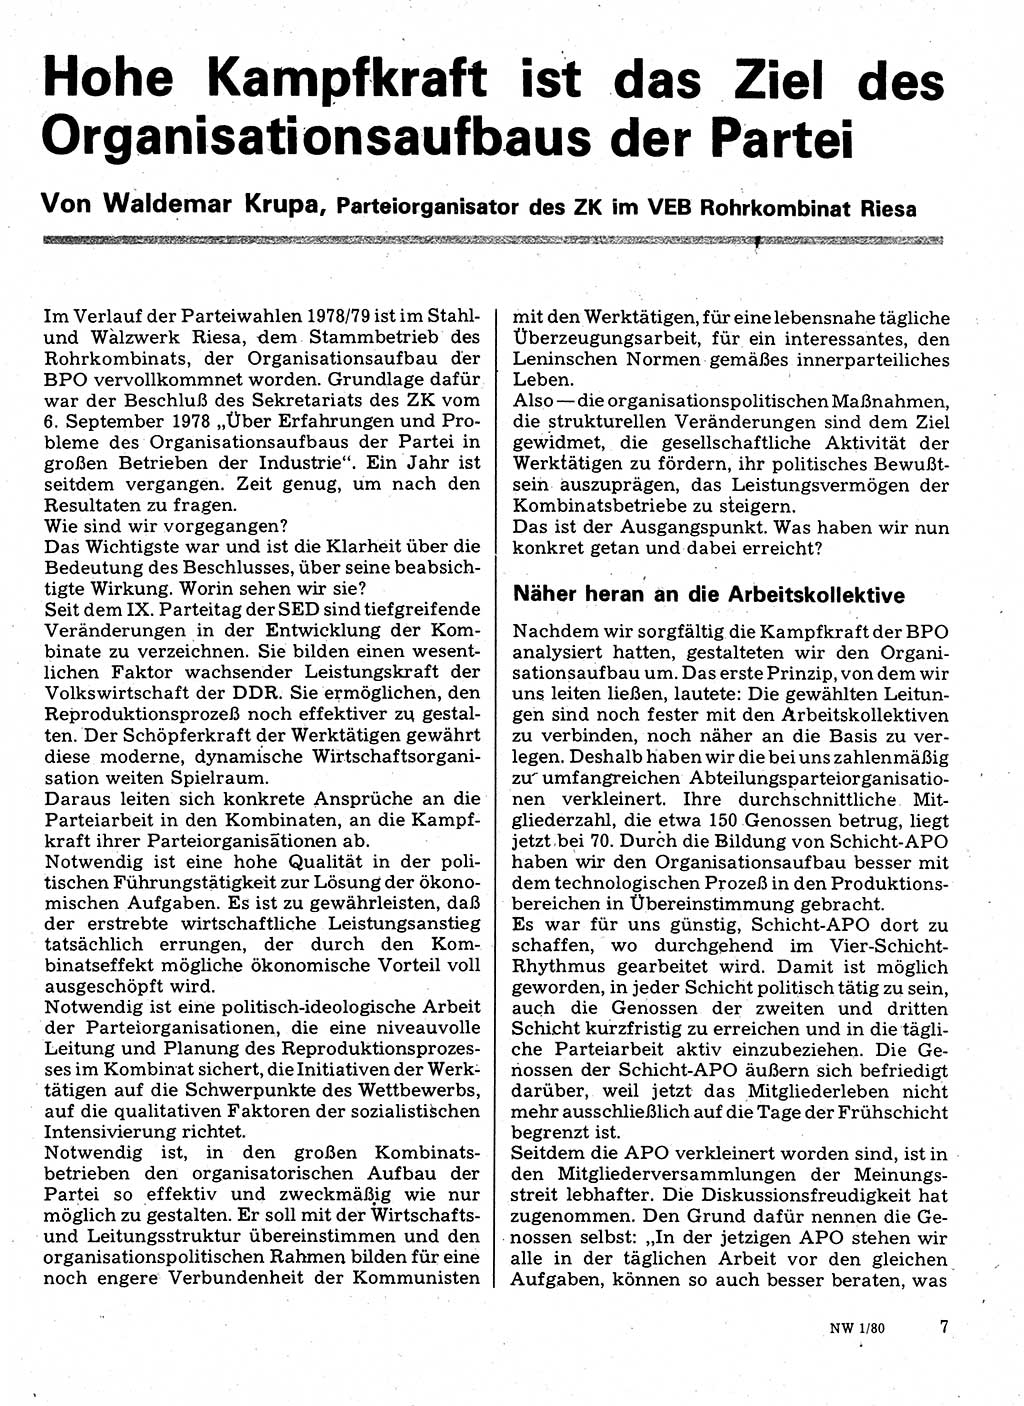 Neuer Weg (NW), Organ des Zentralkomitees (ZK) der SED (Sozialistische Einheitspartei Deutschlands) für Fragen des Parteilebens, 35. Jahrgang [Deutsche Demokratische Republik (DDR)] 1980, Seite 7 (NW ZK SED DDR 1980, S. 7)